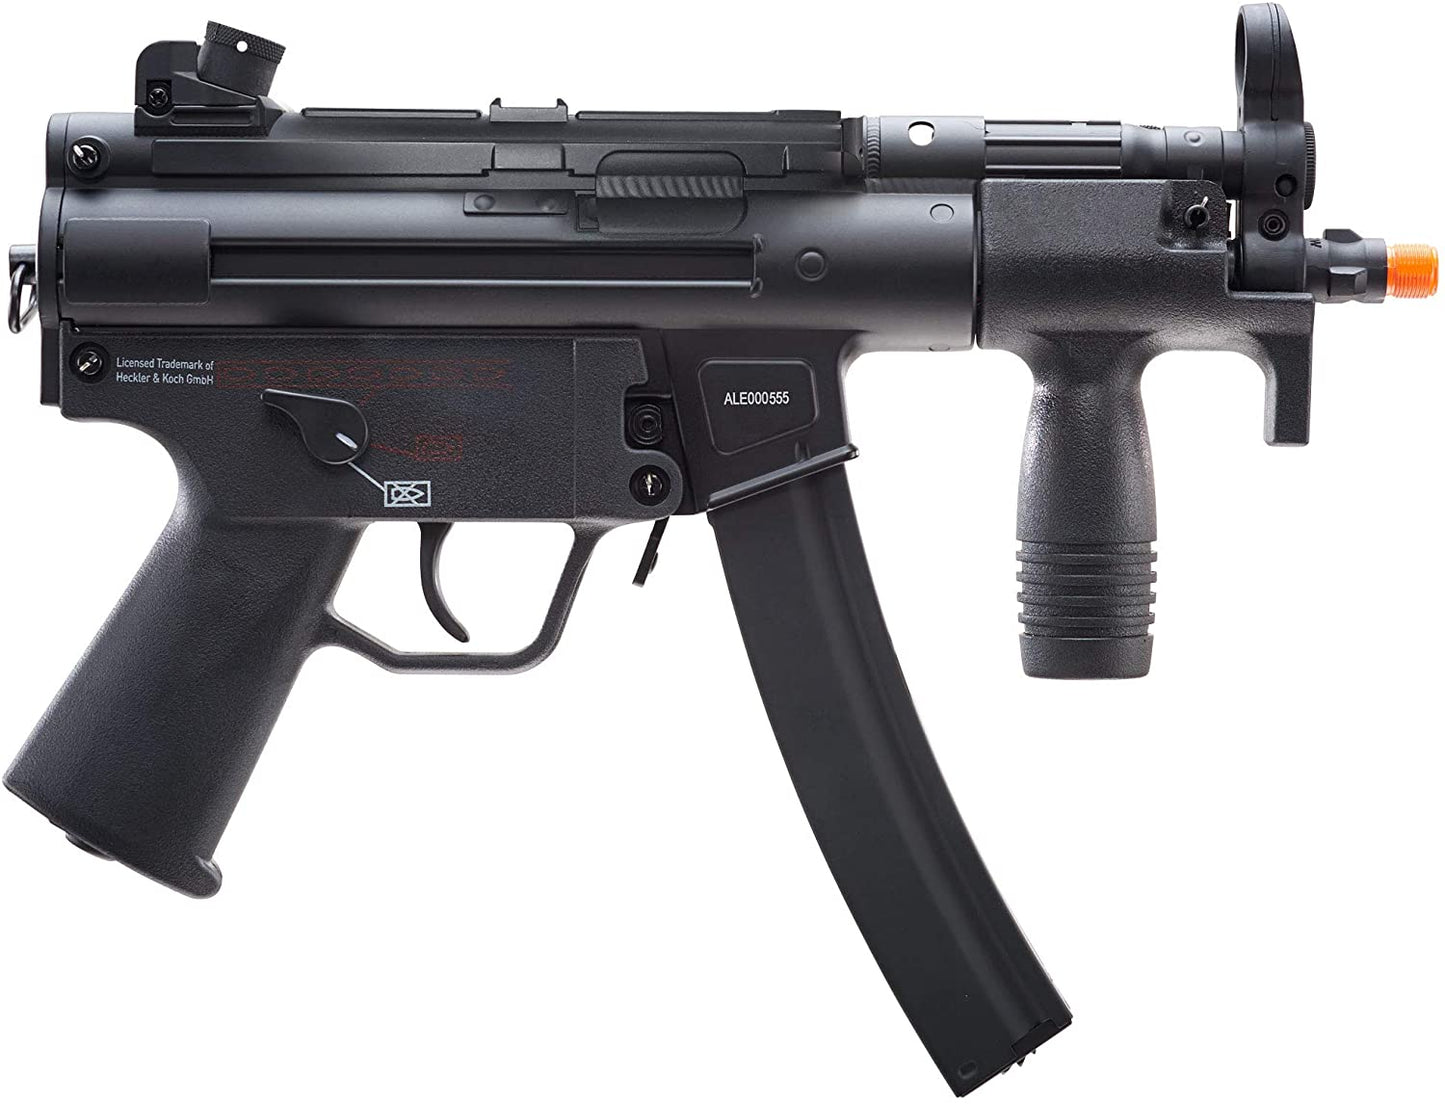 ELITE FORCE/H&K - Heckler & Koch MP5K